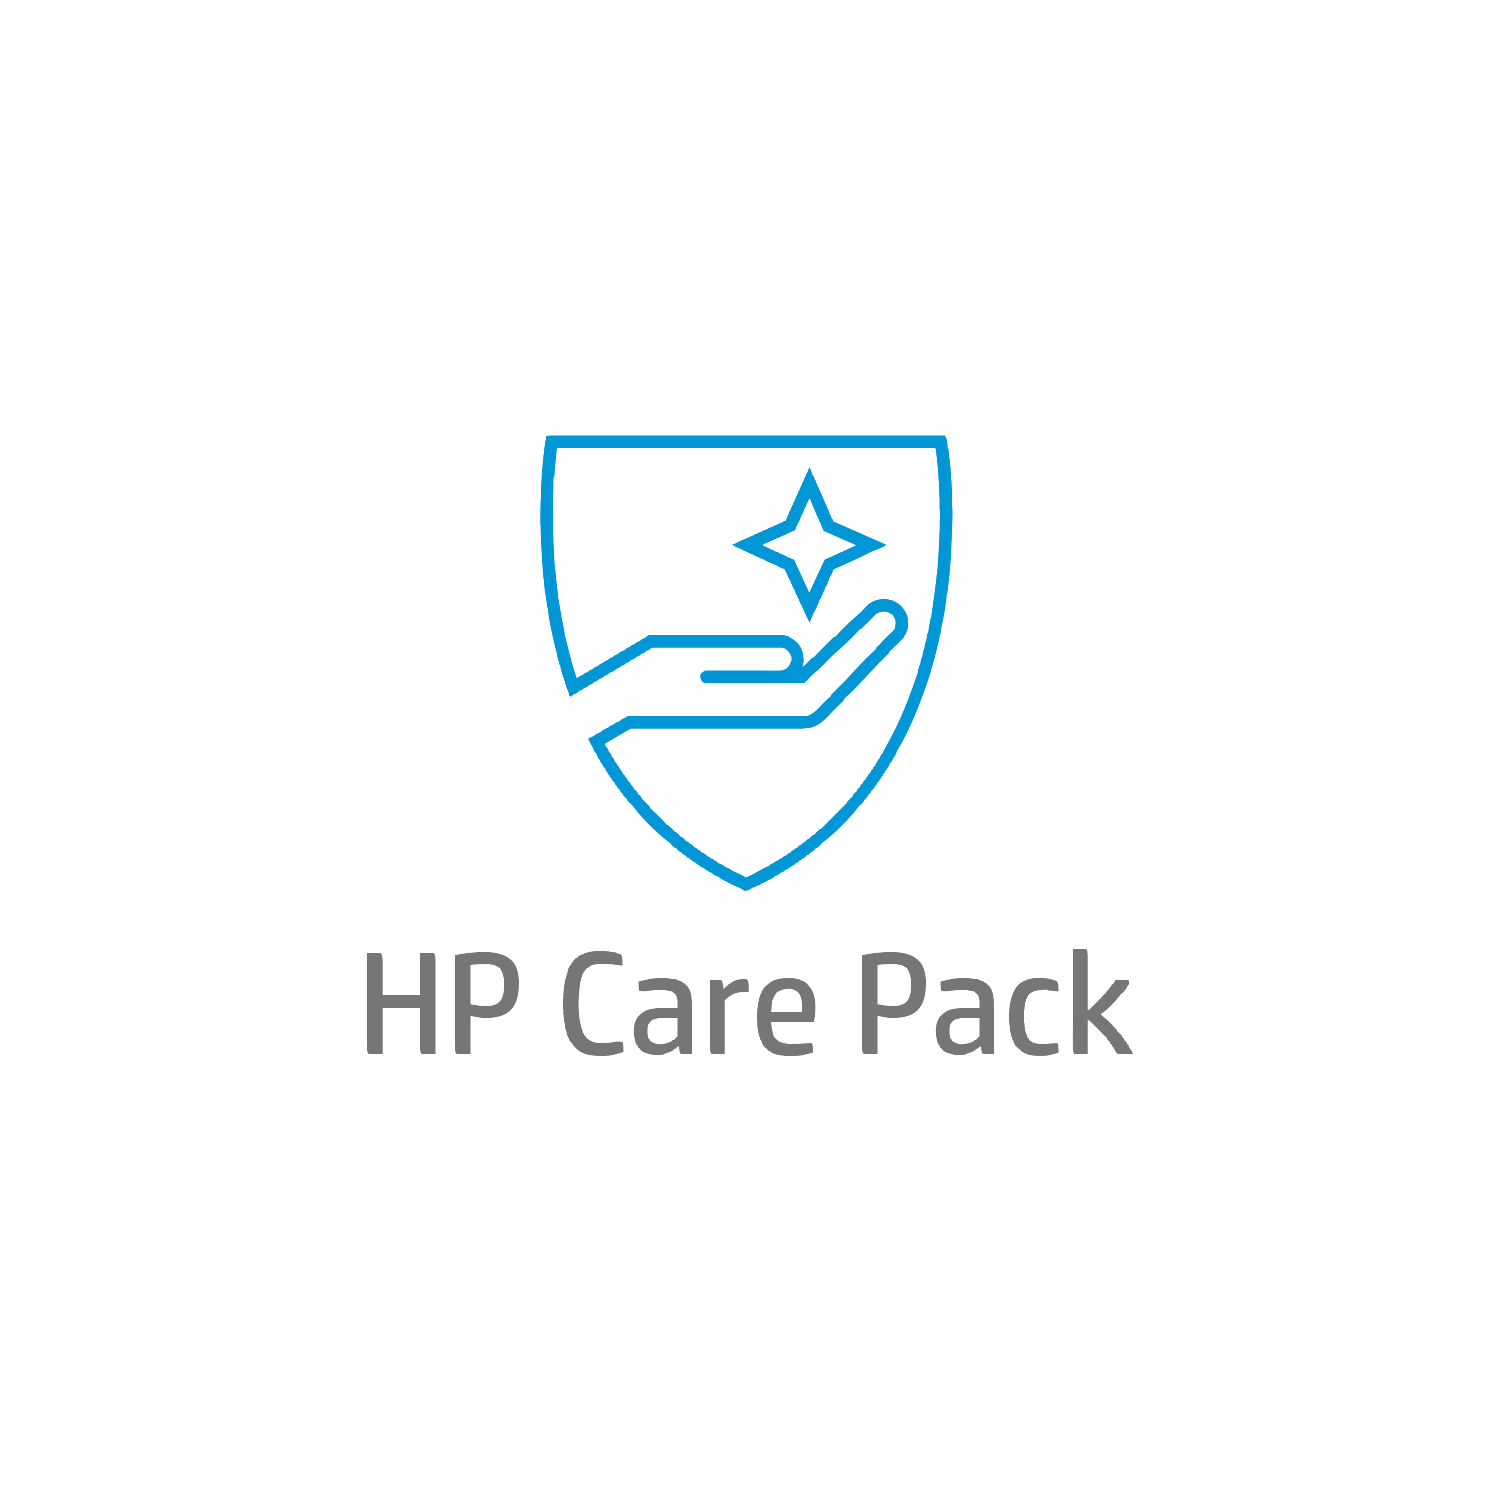 Bild von HP Care 3 Jahre Hardware-Support für Mobile Workstations - Externe Reparatur - Außerhalb des Kundenstandorts - Unter Garantie - Standardarbeitstage - 9 Stunden - 3 Jahre - Reparatur innerhalb von 3–7 Werktagen